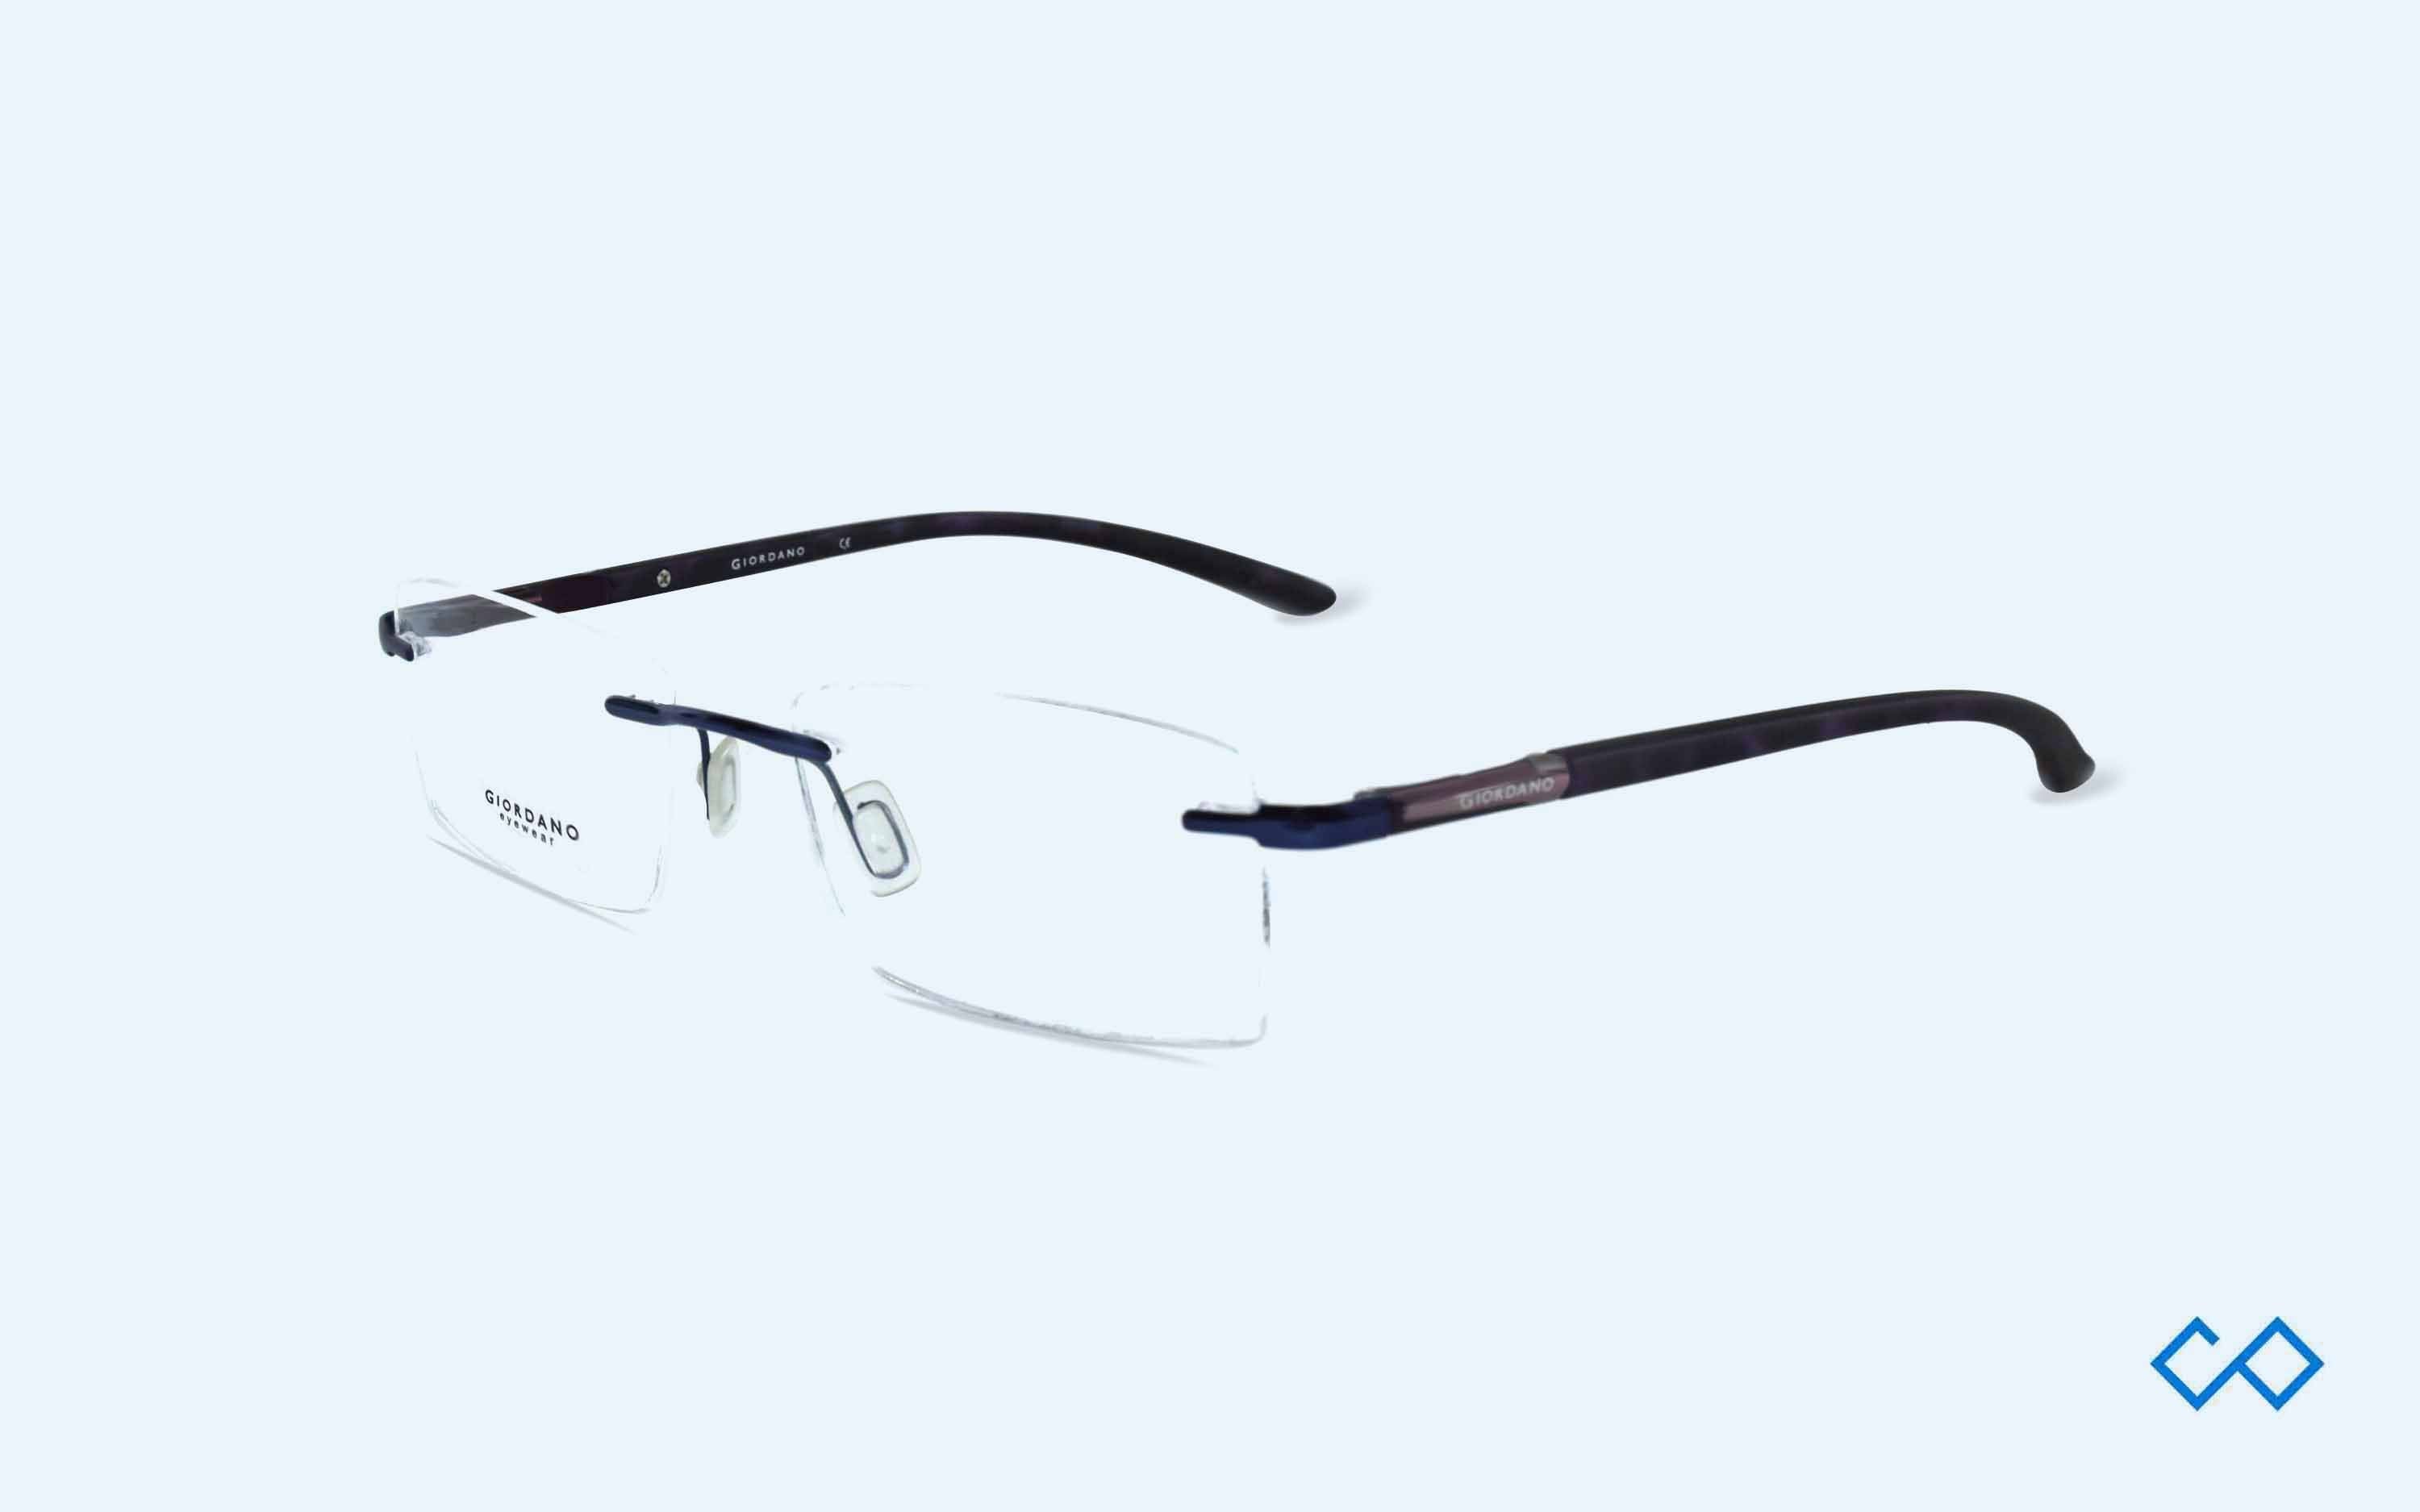 Buy Giordano Polarized Sunglasses Uv Protected Use for Men - Ga90322C01  (57) Online